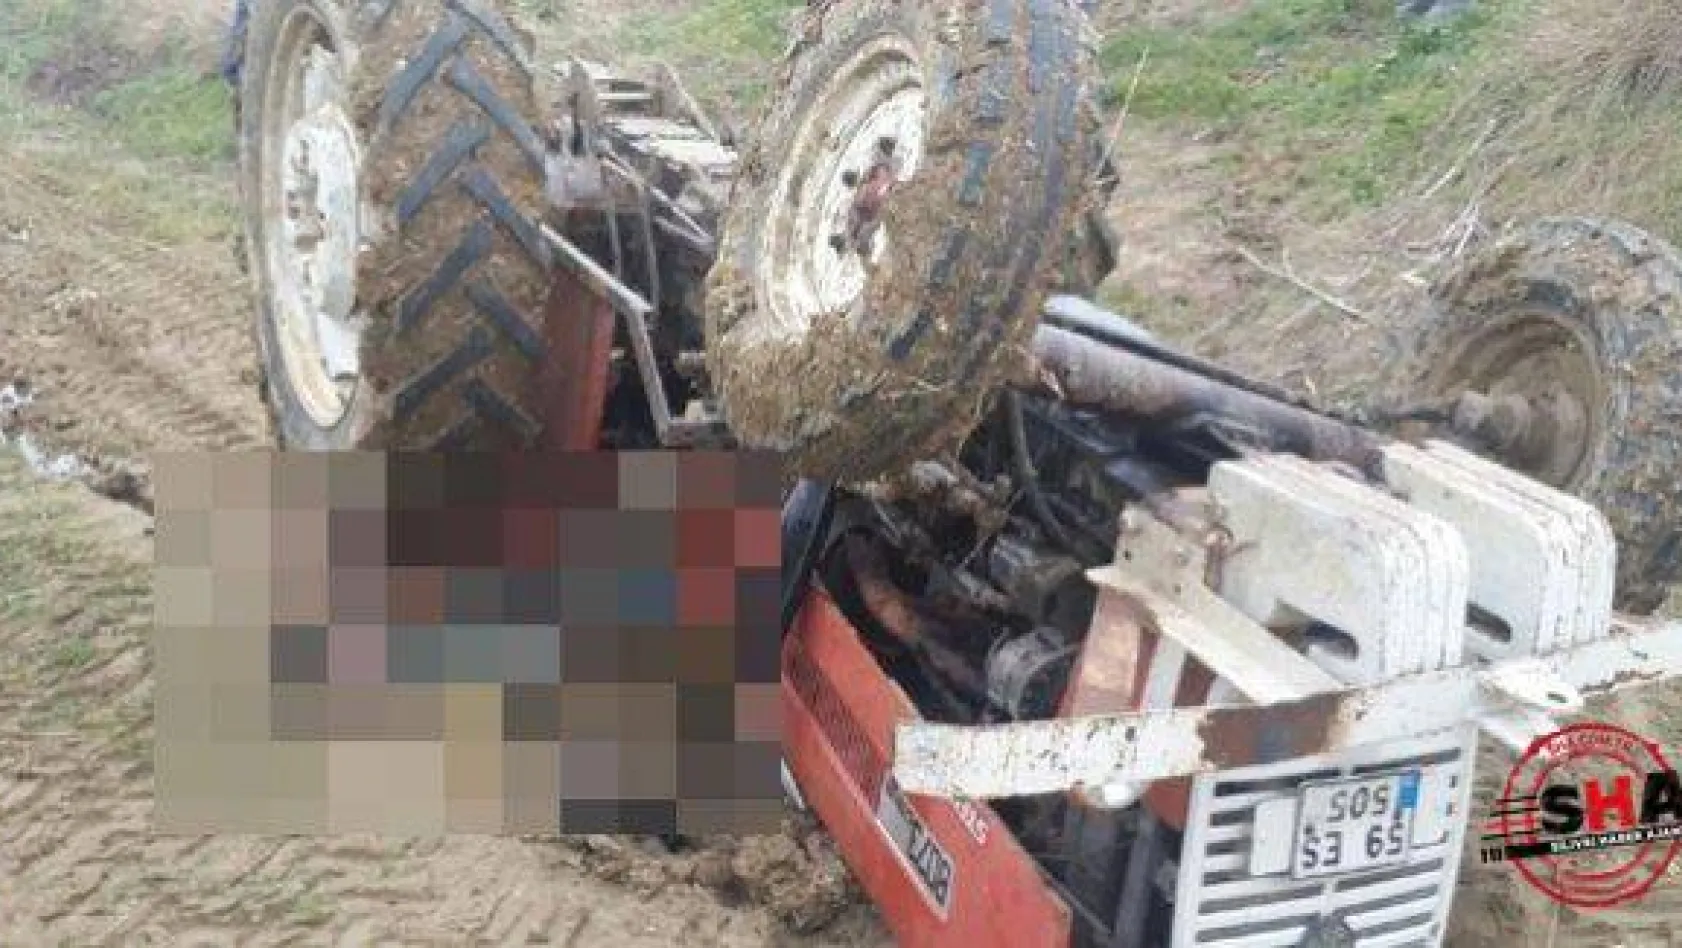 Kadıkoy'de traktör devrildi 1 ölü